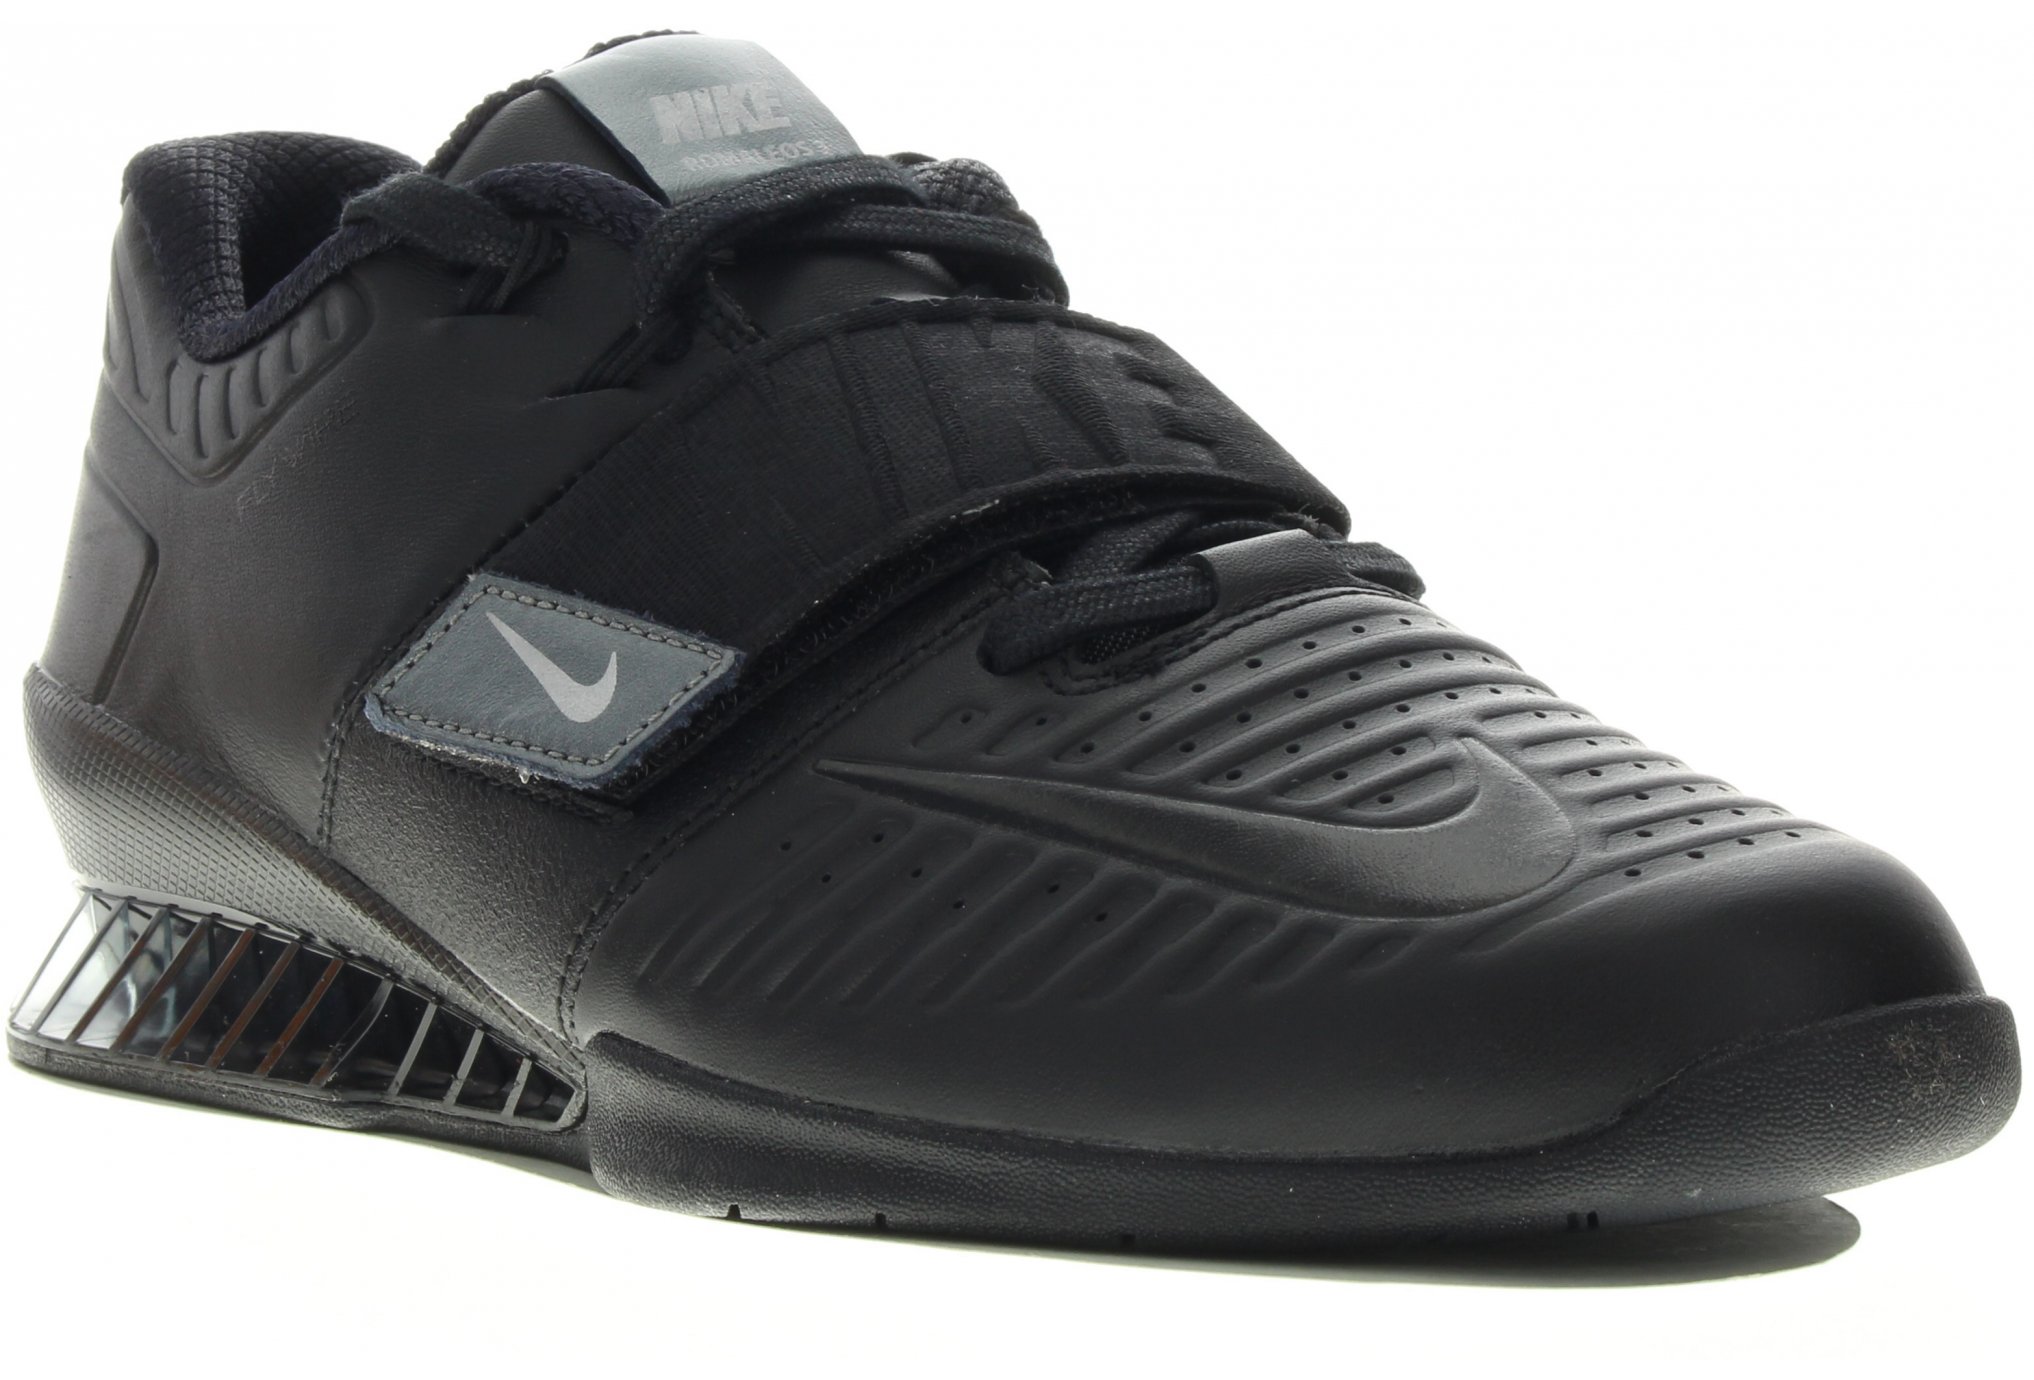 Precios de Nike Romaleos 3 baratas - Ofertas para comprar online y  opiniones | MundoTraining